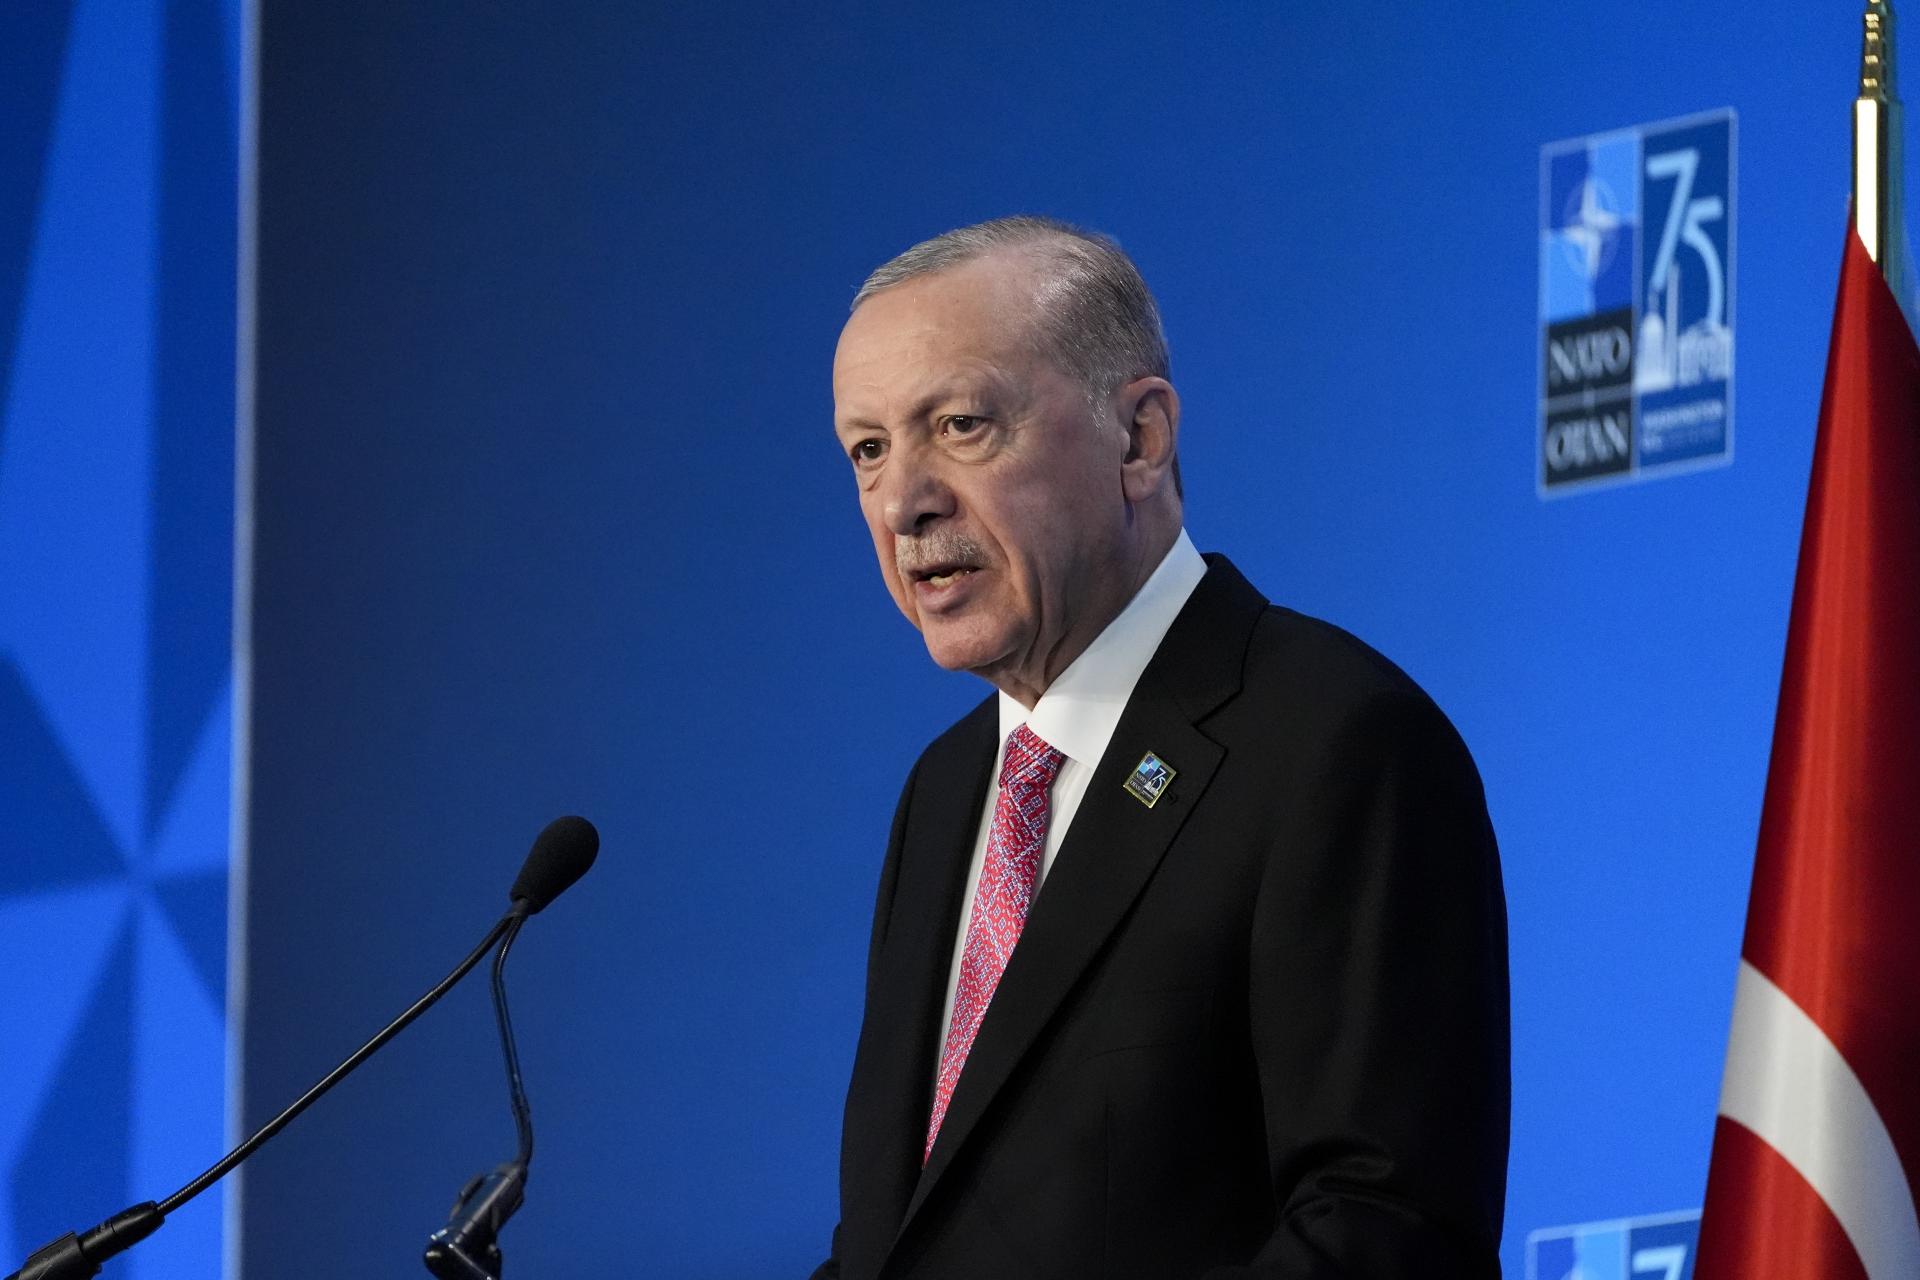 Obnovenie rokovaní o budúcnosti Cypru pod vedením OSN nemá zmysel, vyhlásil Erdogan